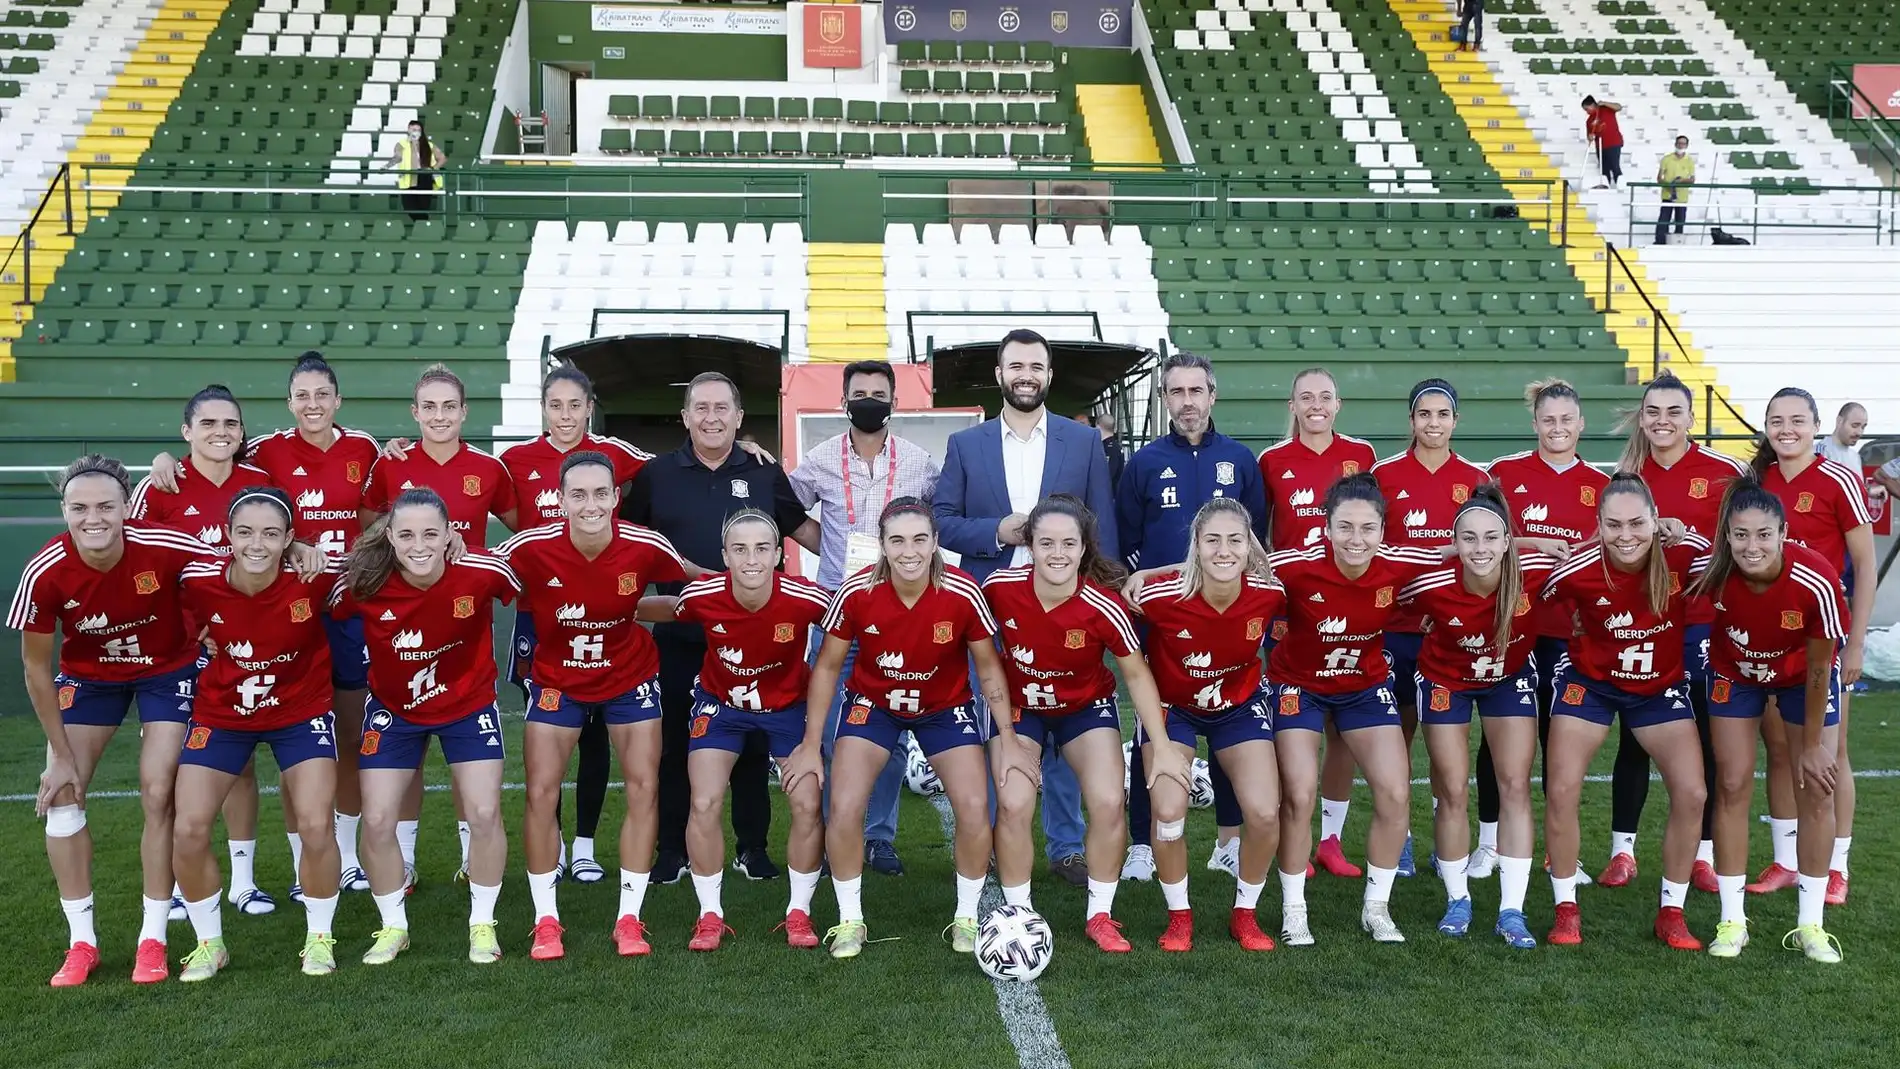 La selección femenina de fútbol juega esta noche en el Príncipe Felipe